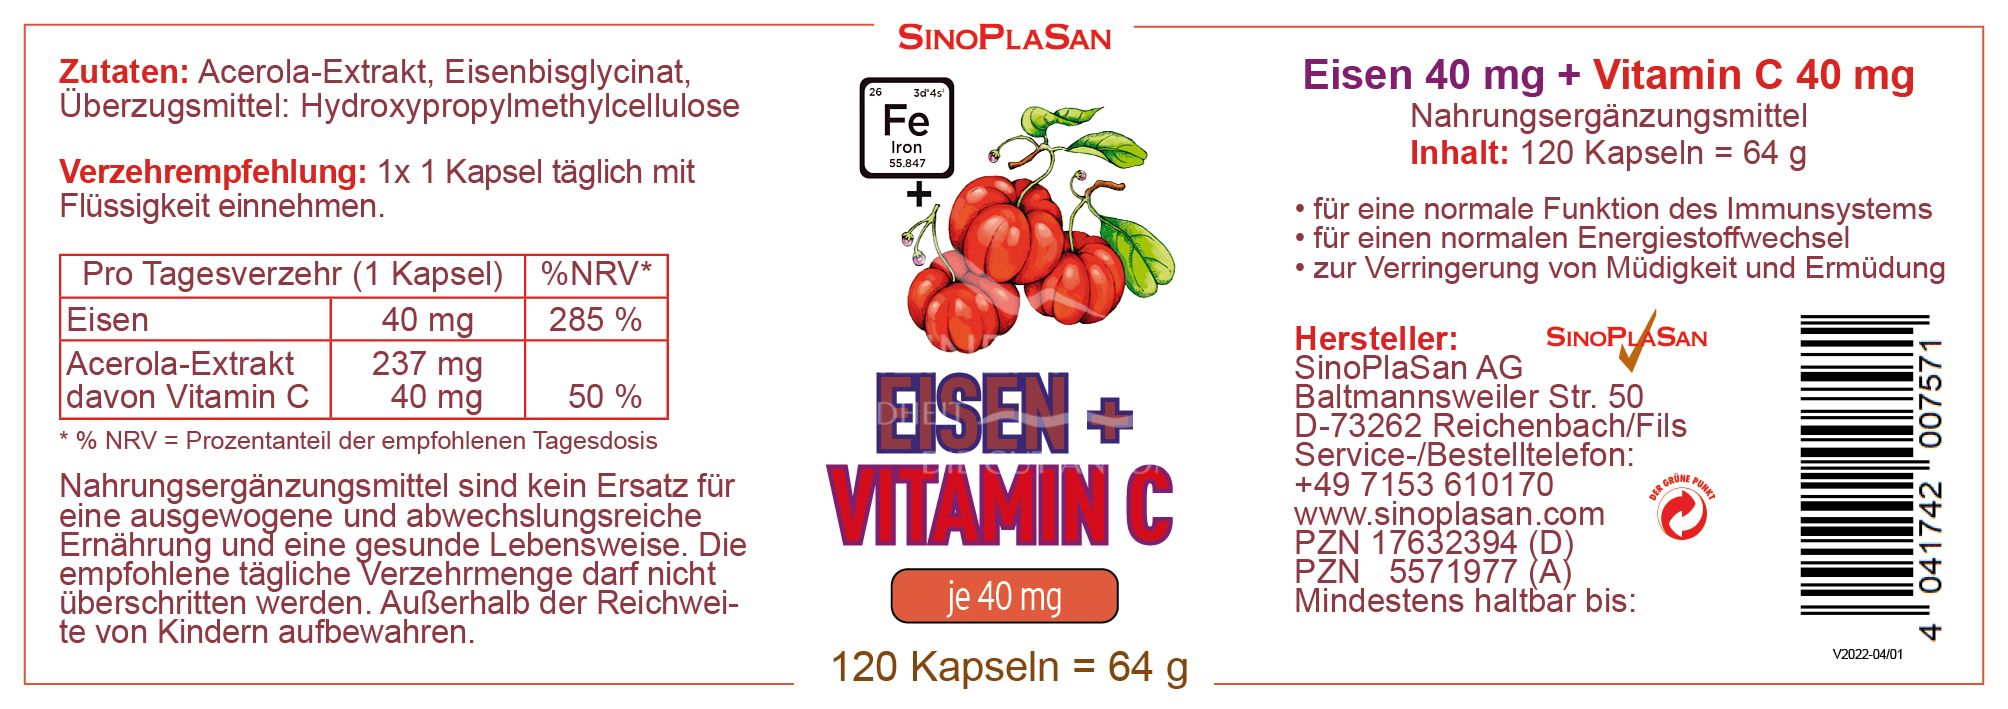 SinoPlaSan Eisen + Vitamin C Kapseln